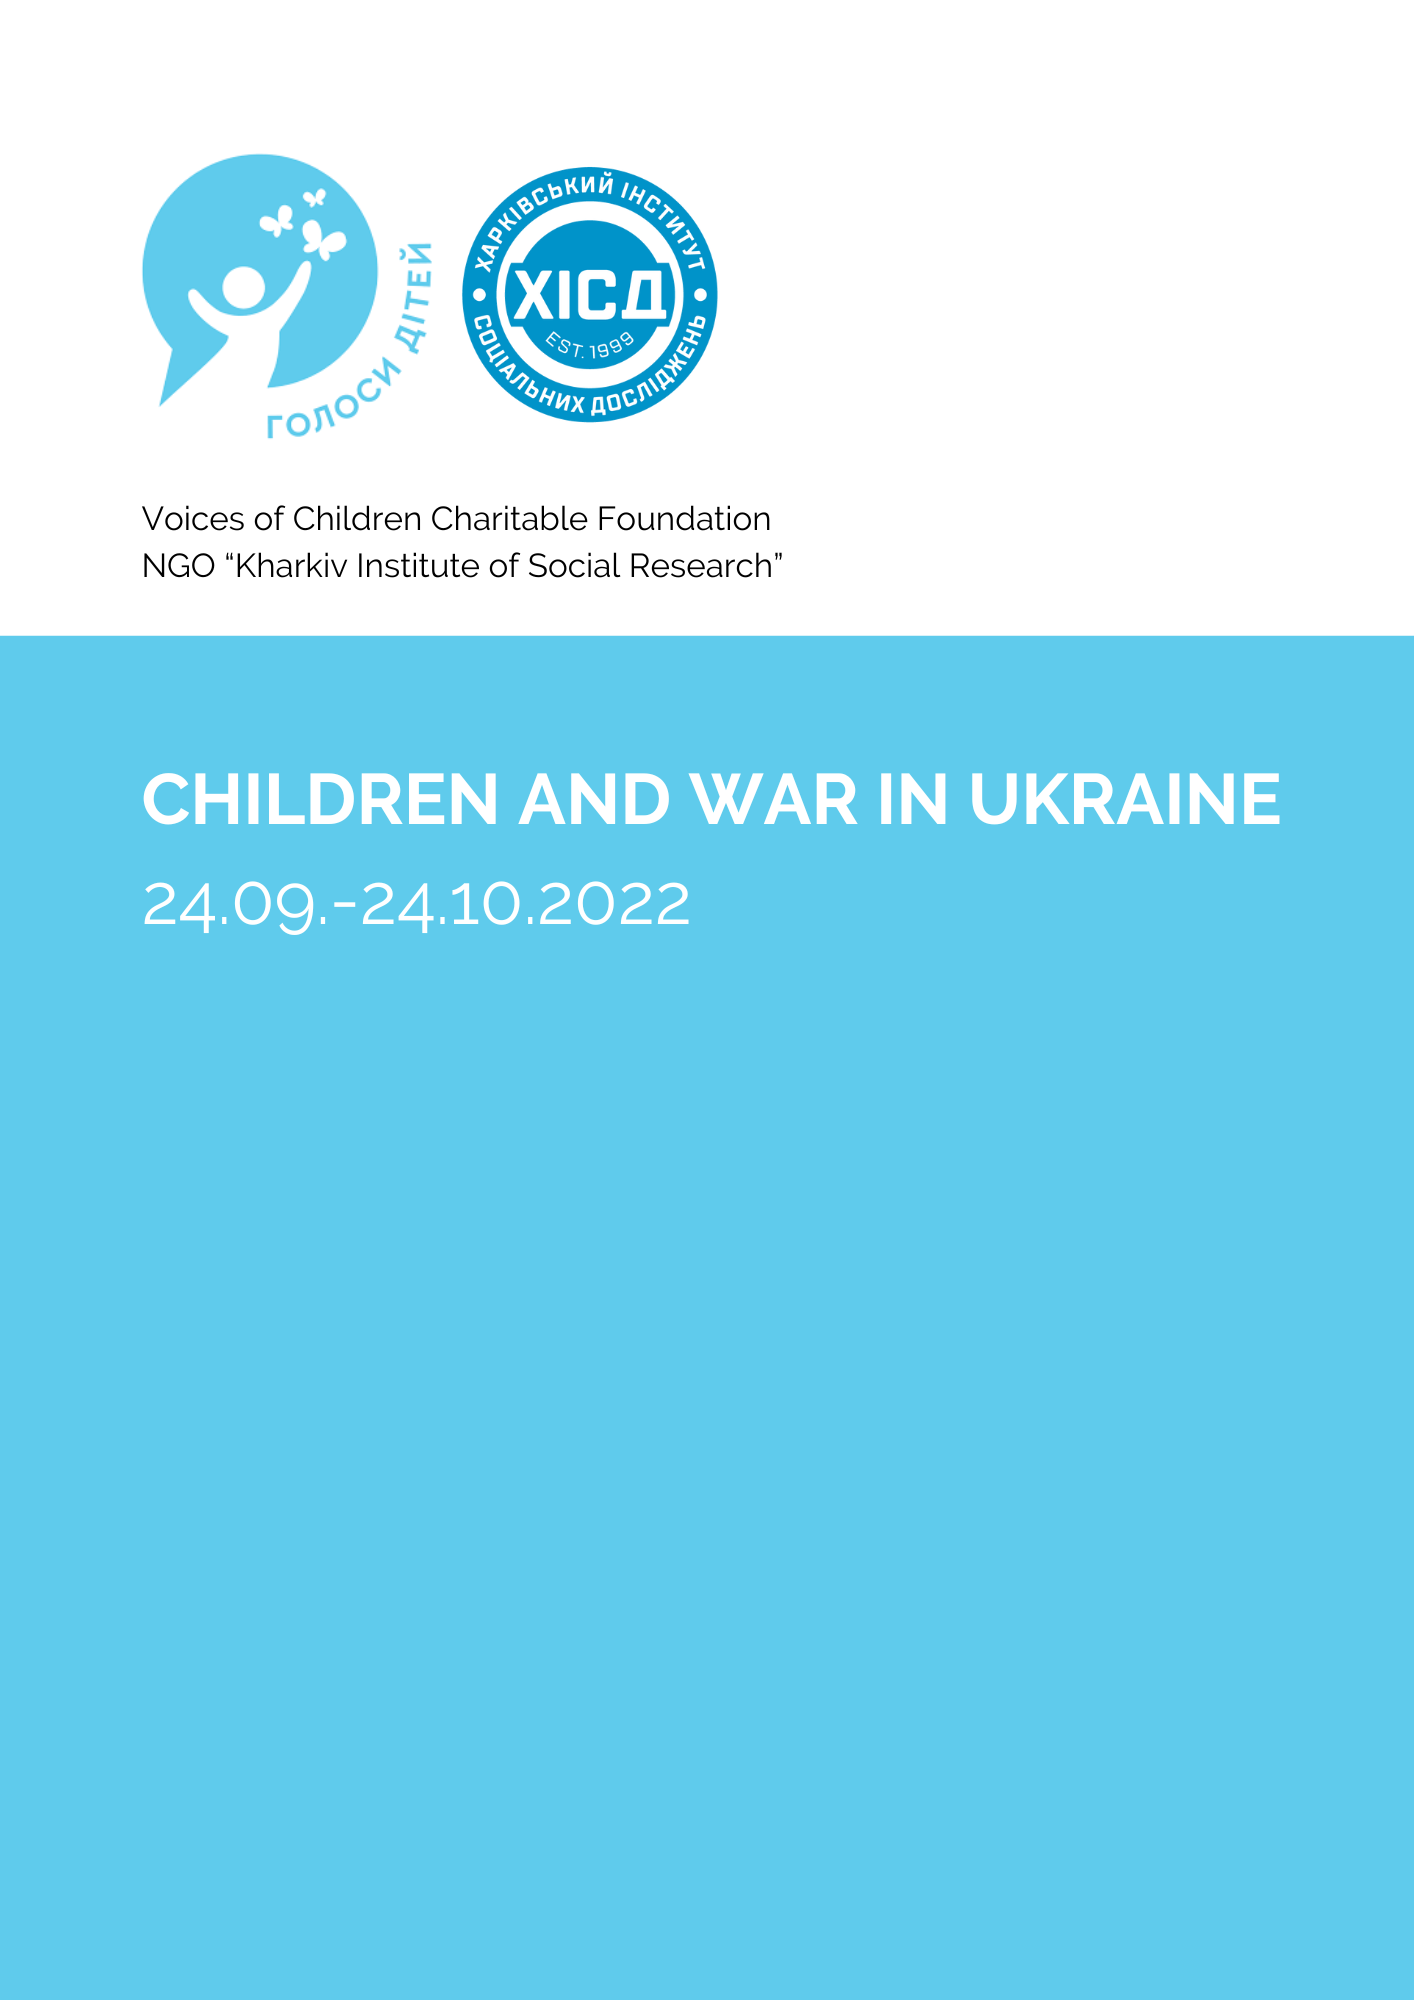 Children and the war in Ukraine 24.09.-24.10.2022